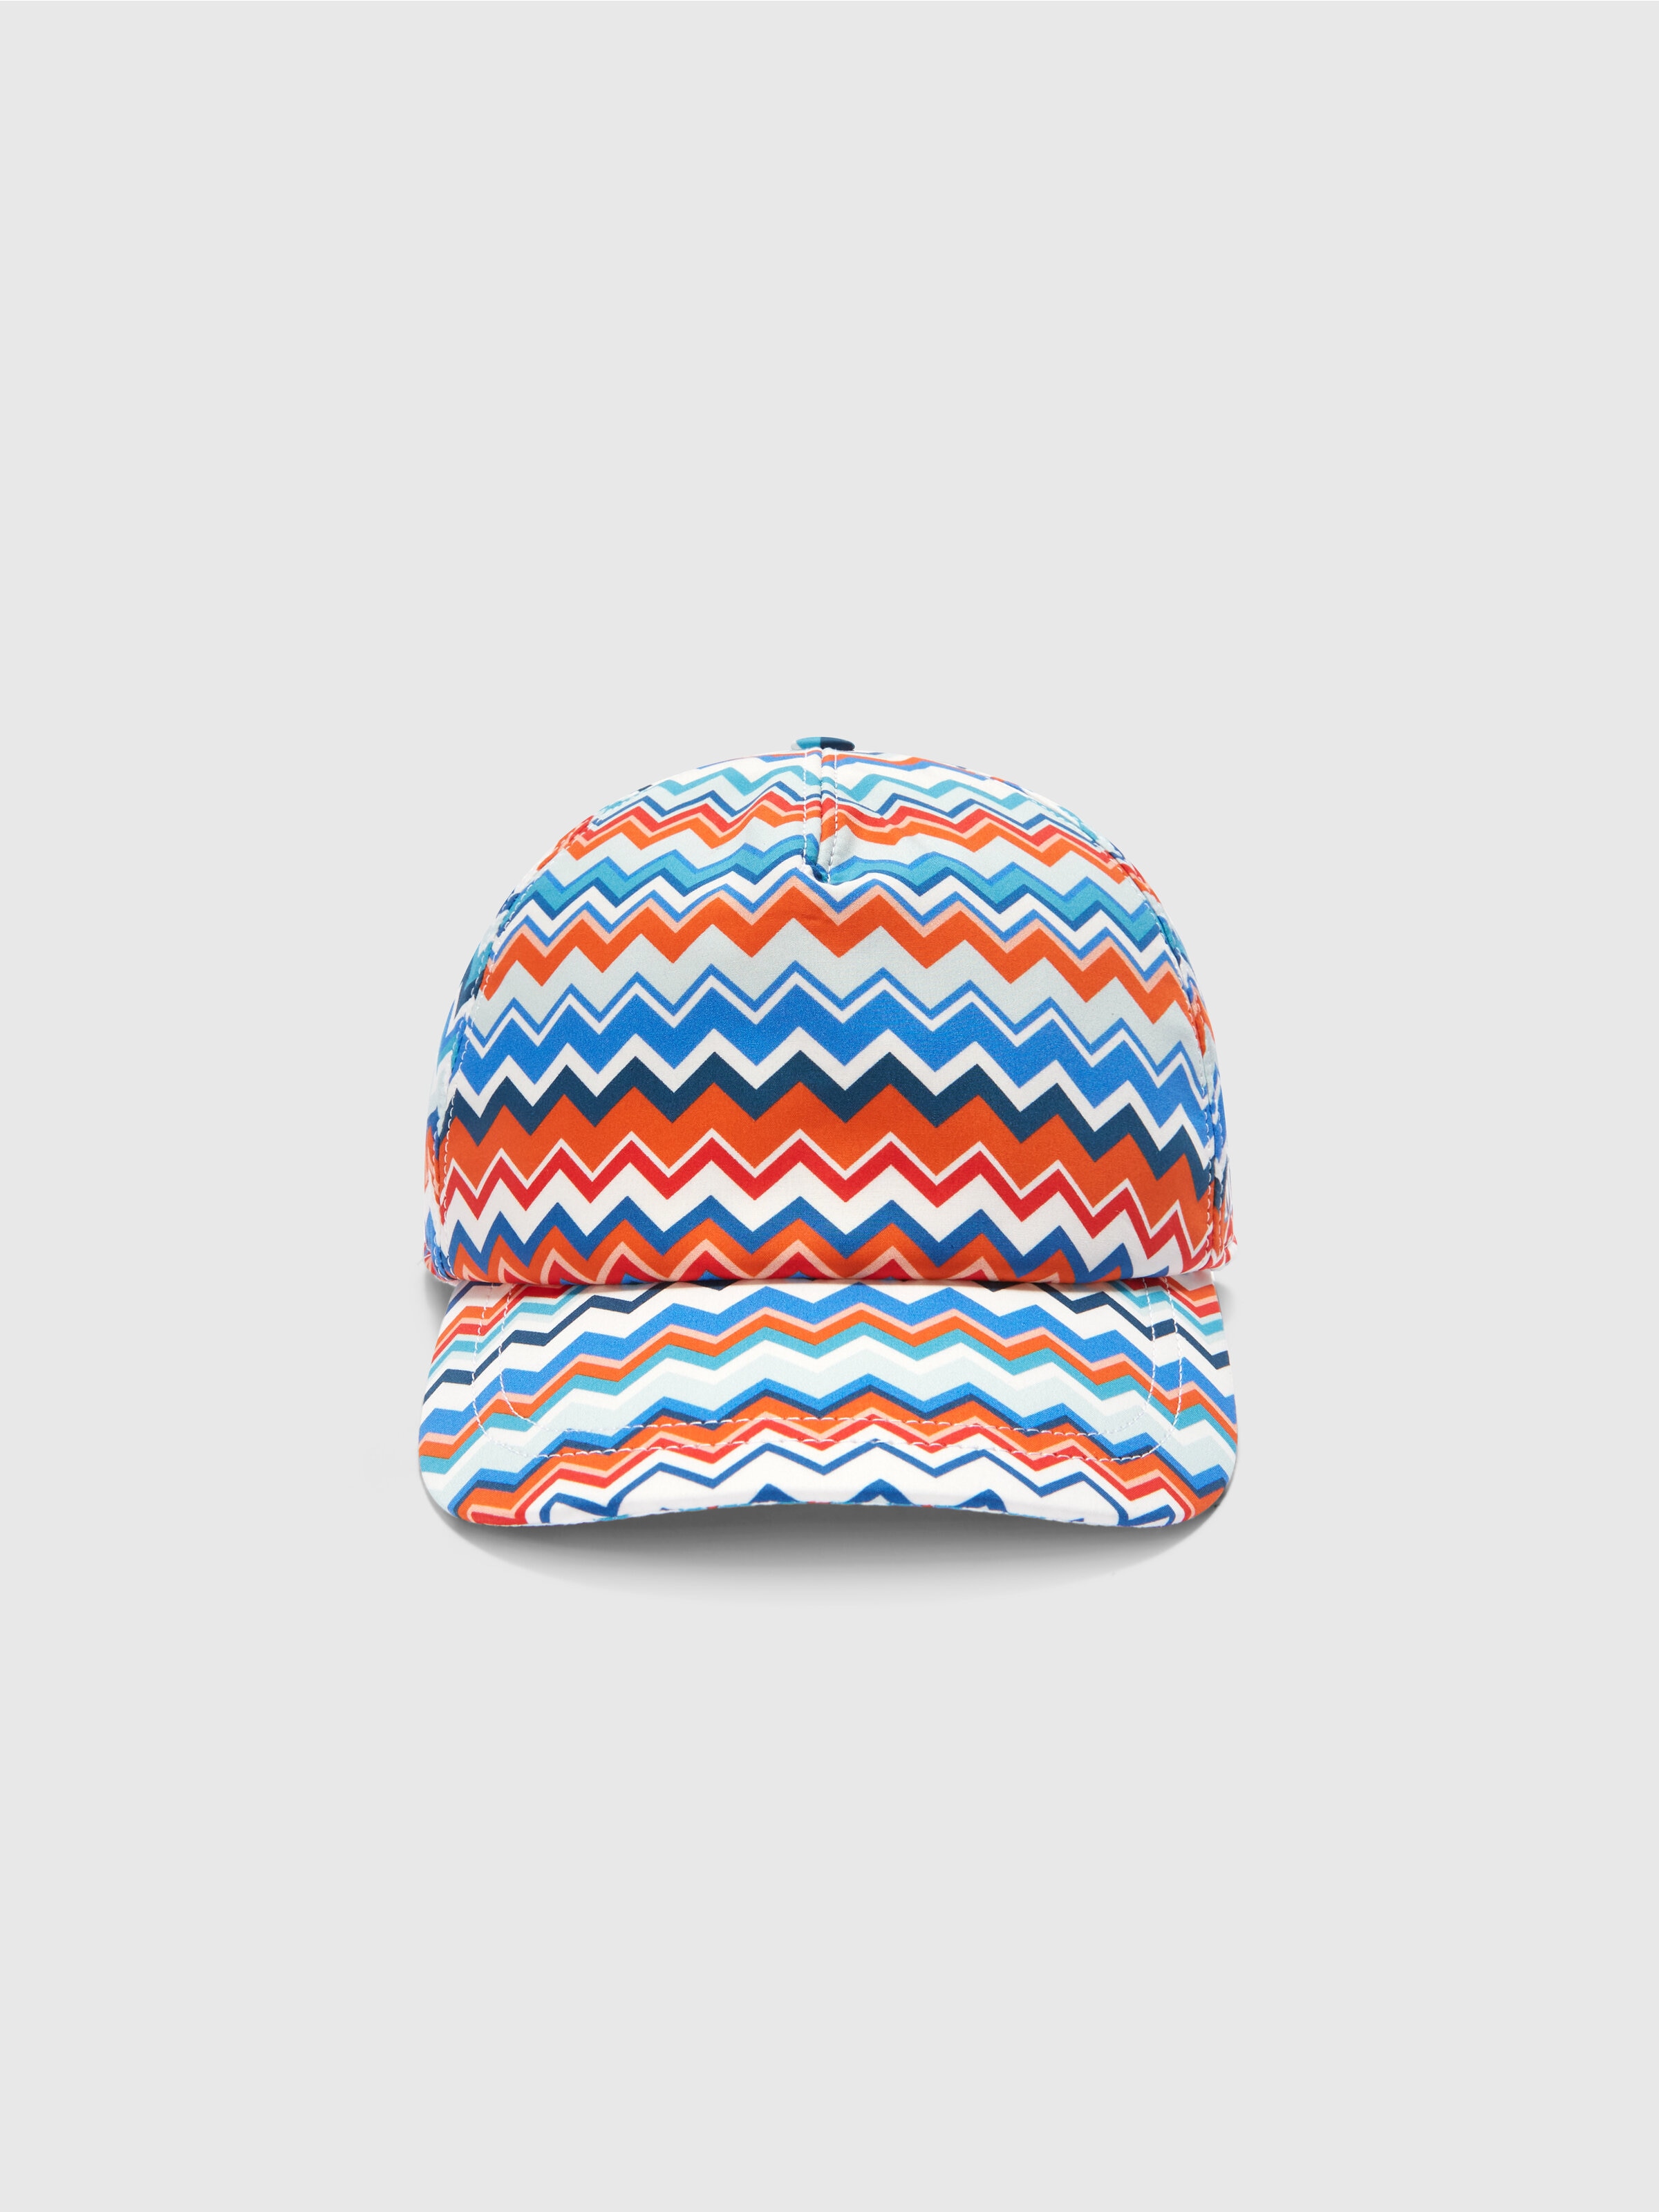 Gorra con visera de algodón en zigzag, Multicolor  - 2